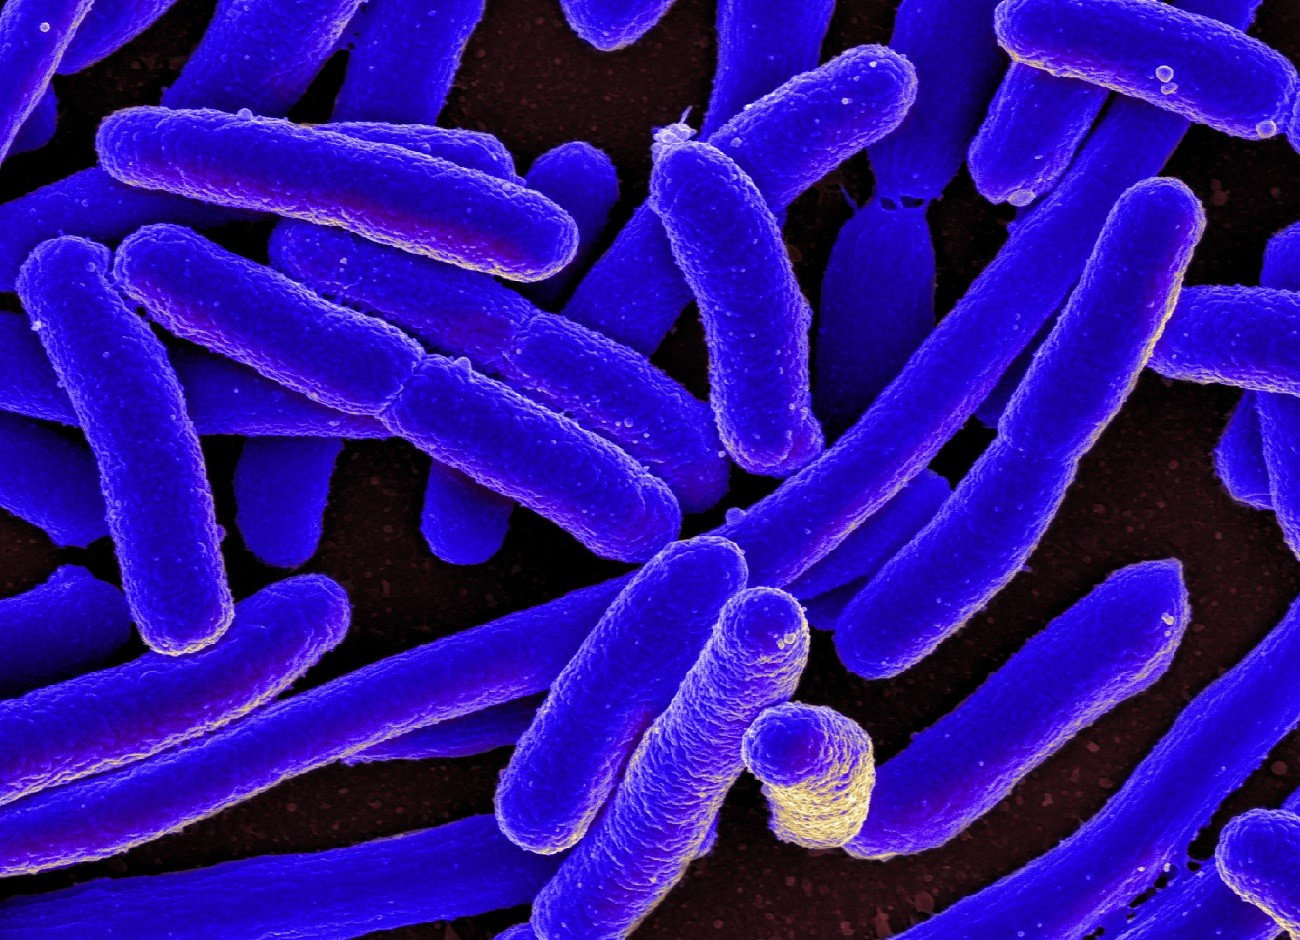 Żywa bakteria uwieczniona. Wykonano najostrzejsze zdjęcie w historii